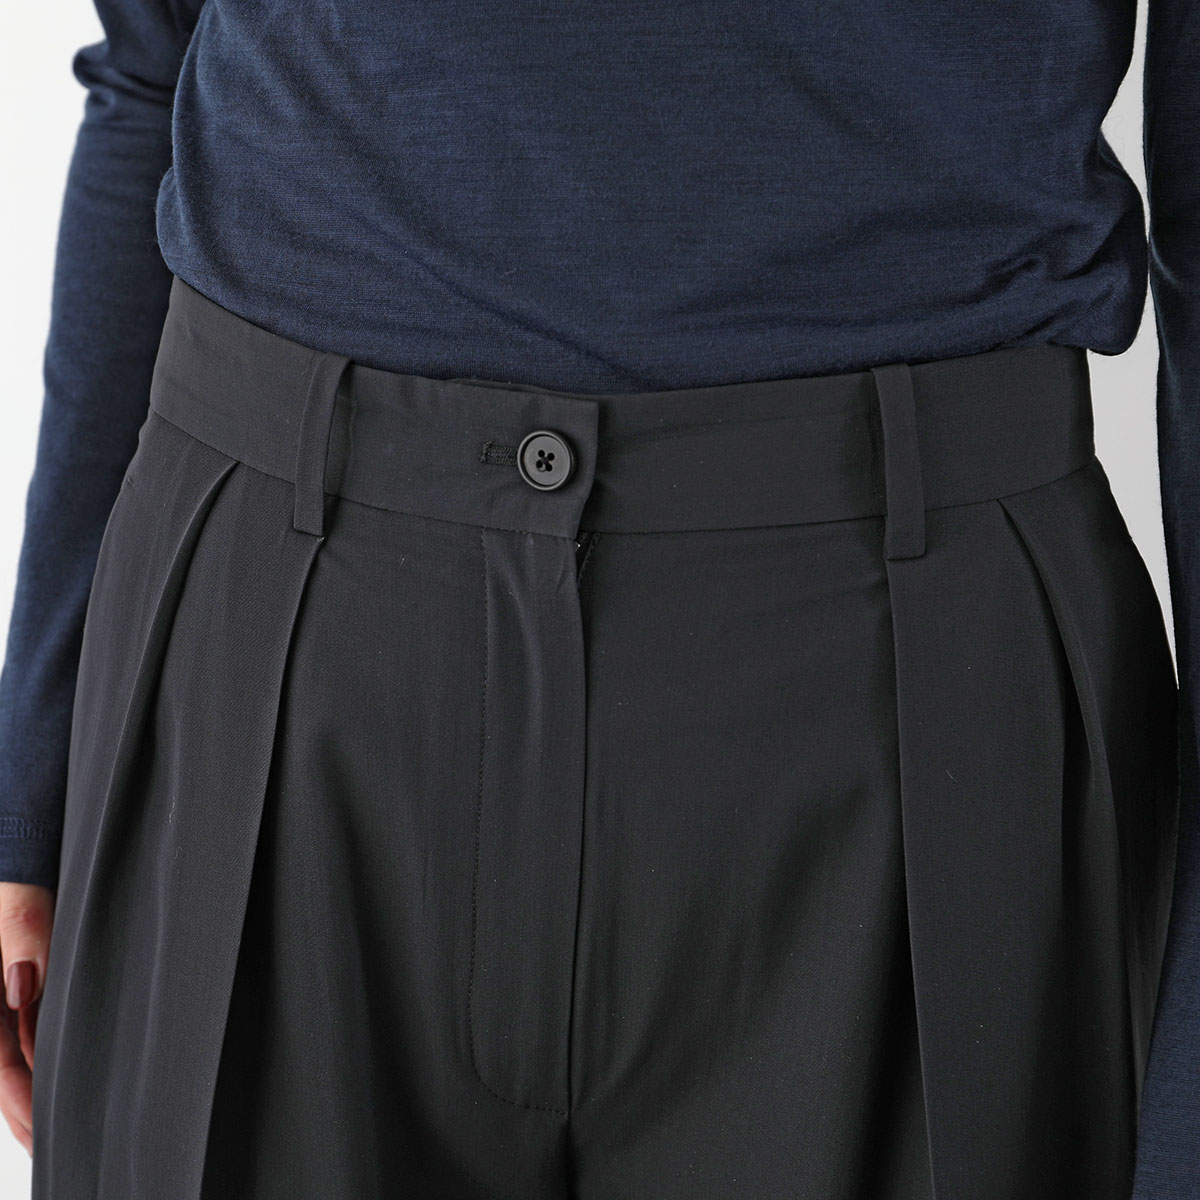 THE ROW The * low широкий брюки IGOR PANTi гол 5629 W1973 женский центральный Press ввод шерсть Blend BLK